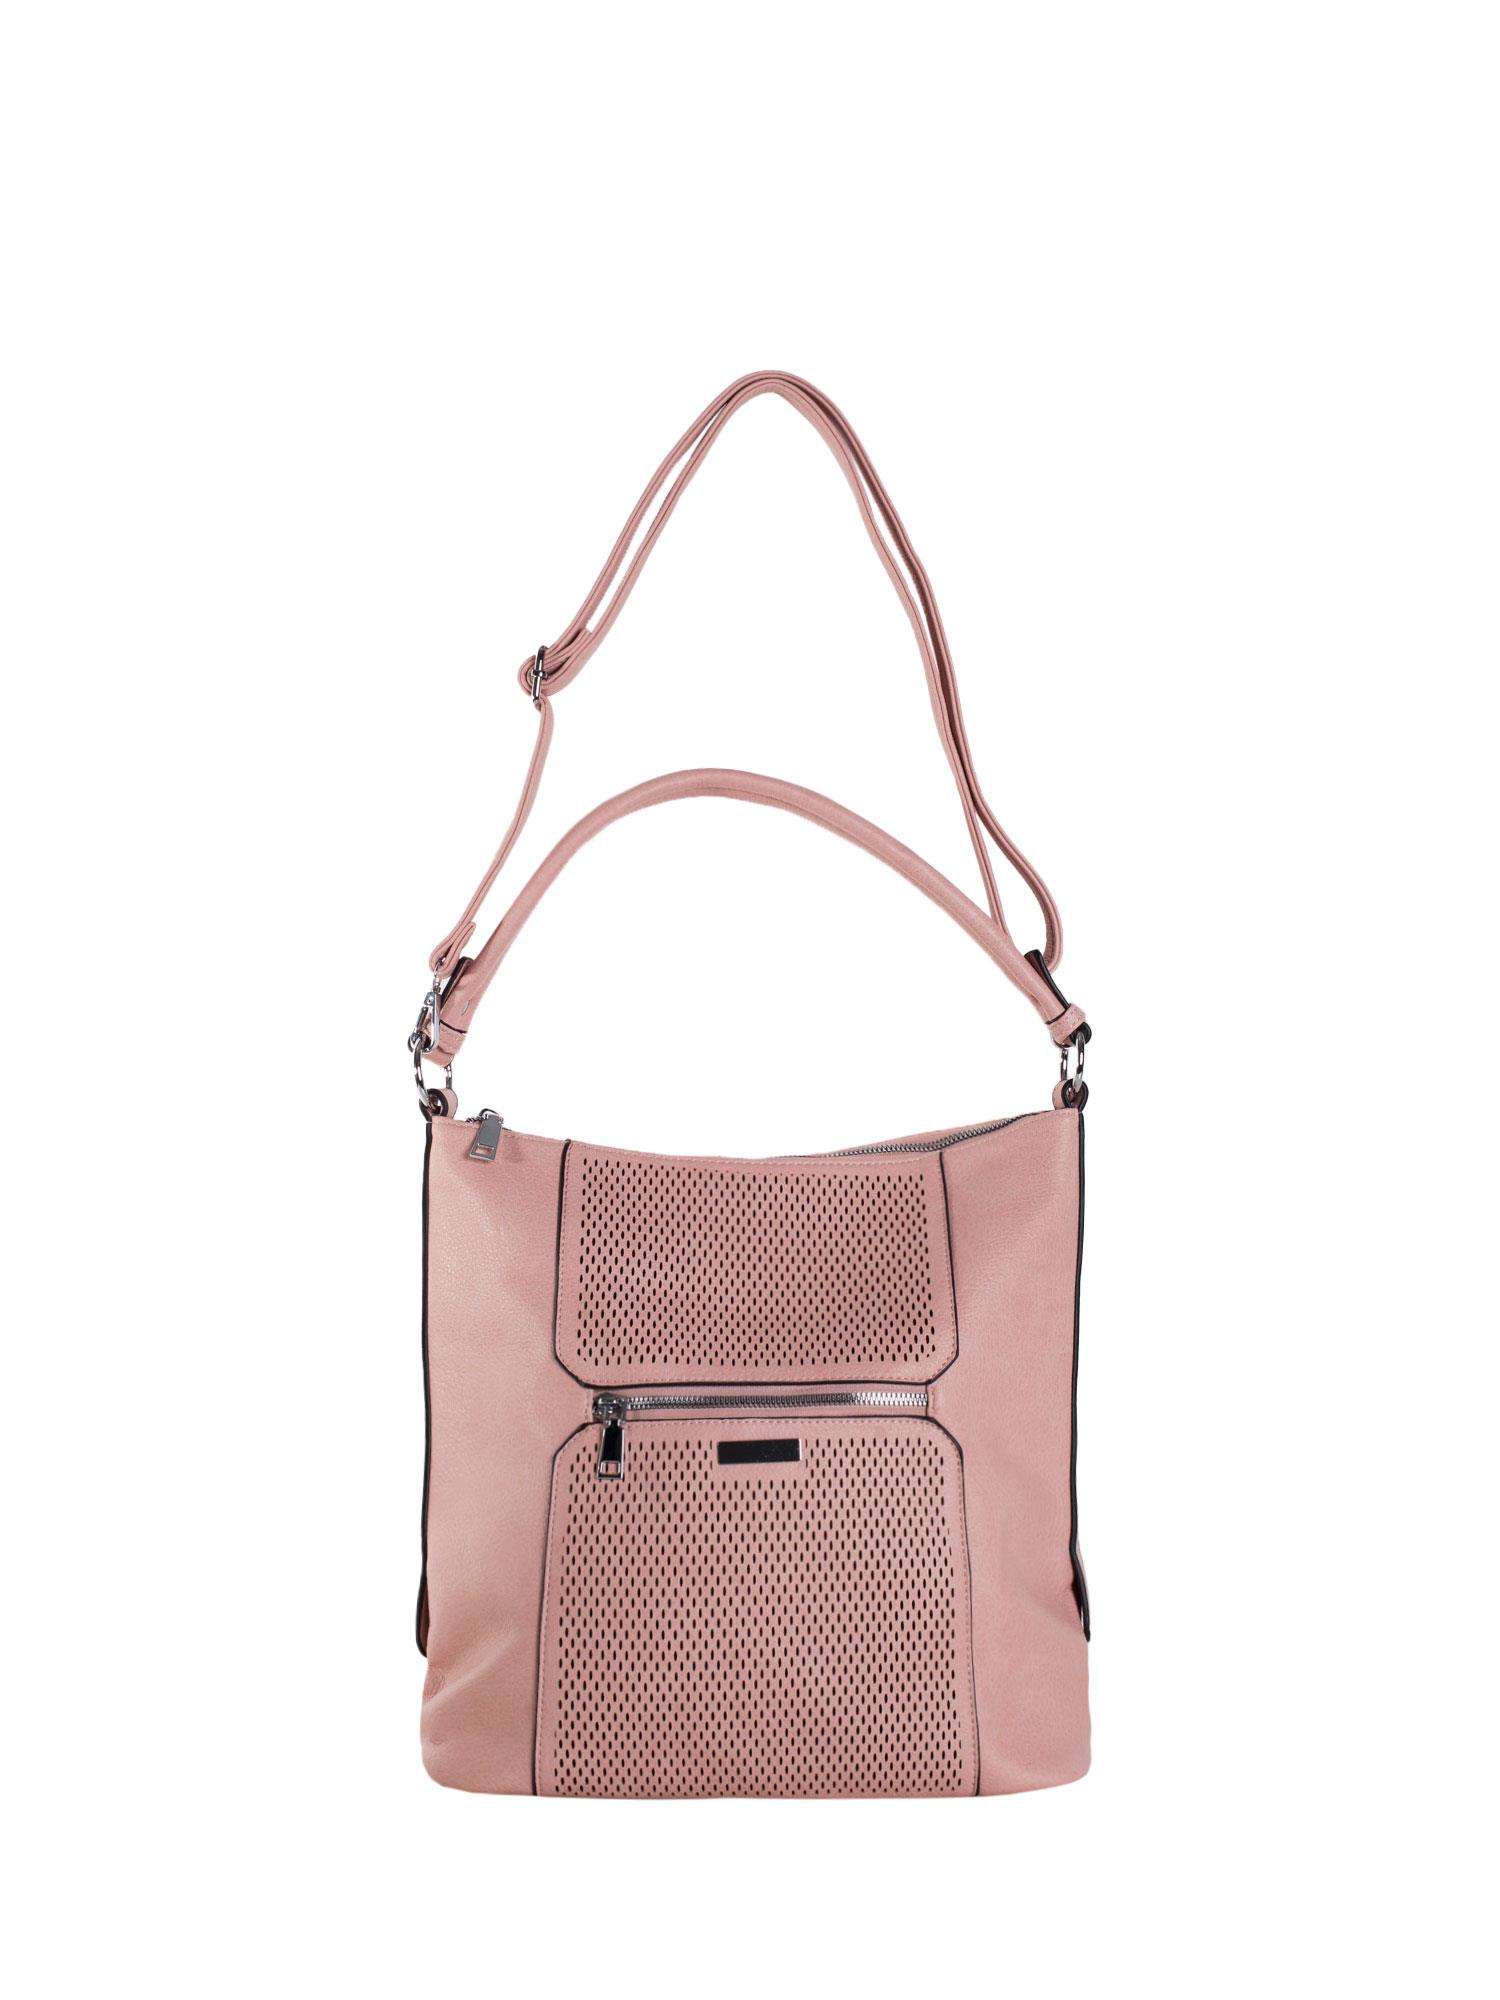 Light pink city shoulder bag with removable strap